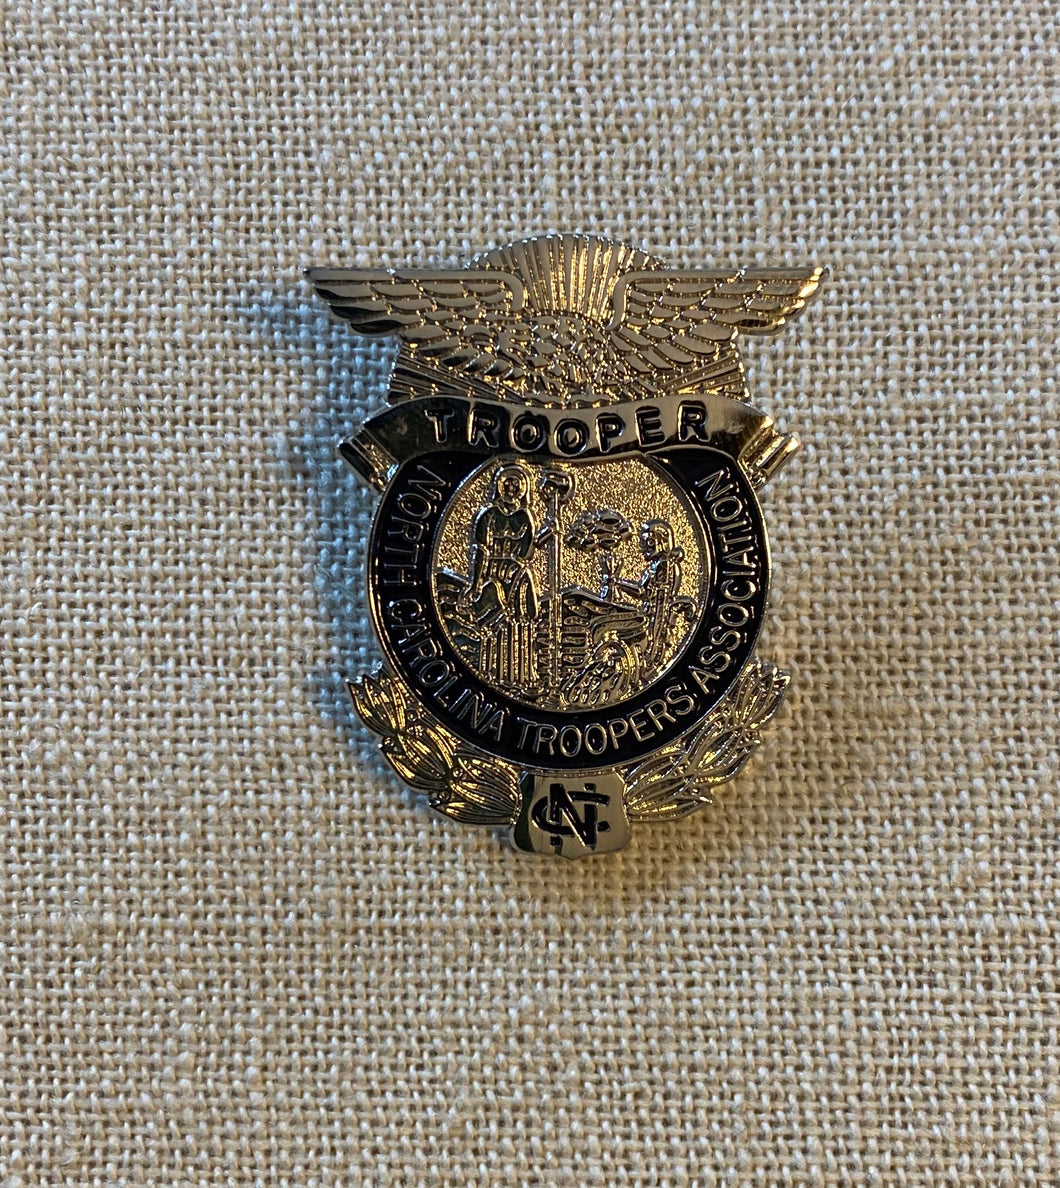 Badge Lapel Pin